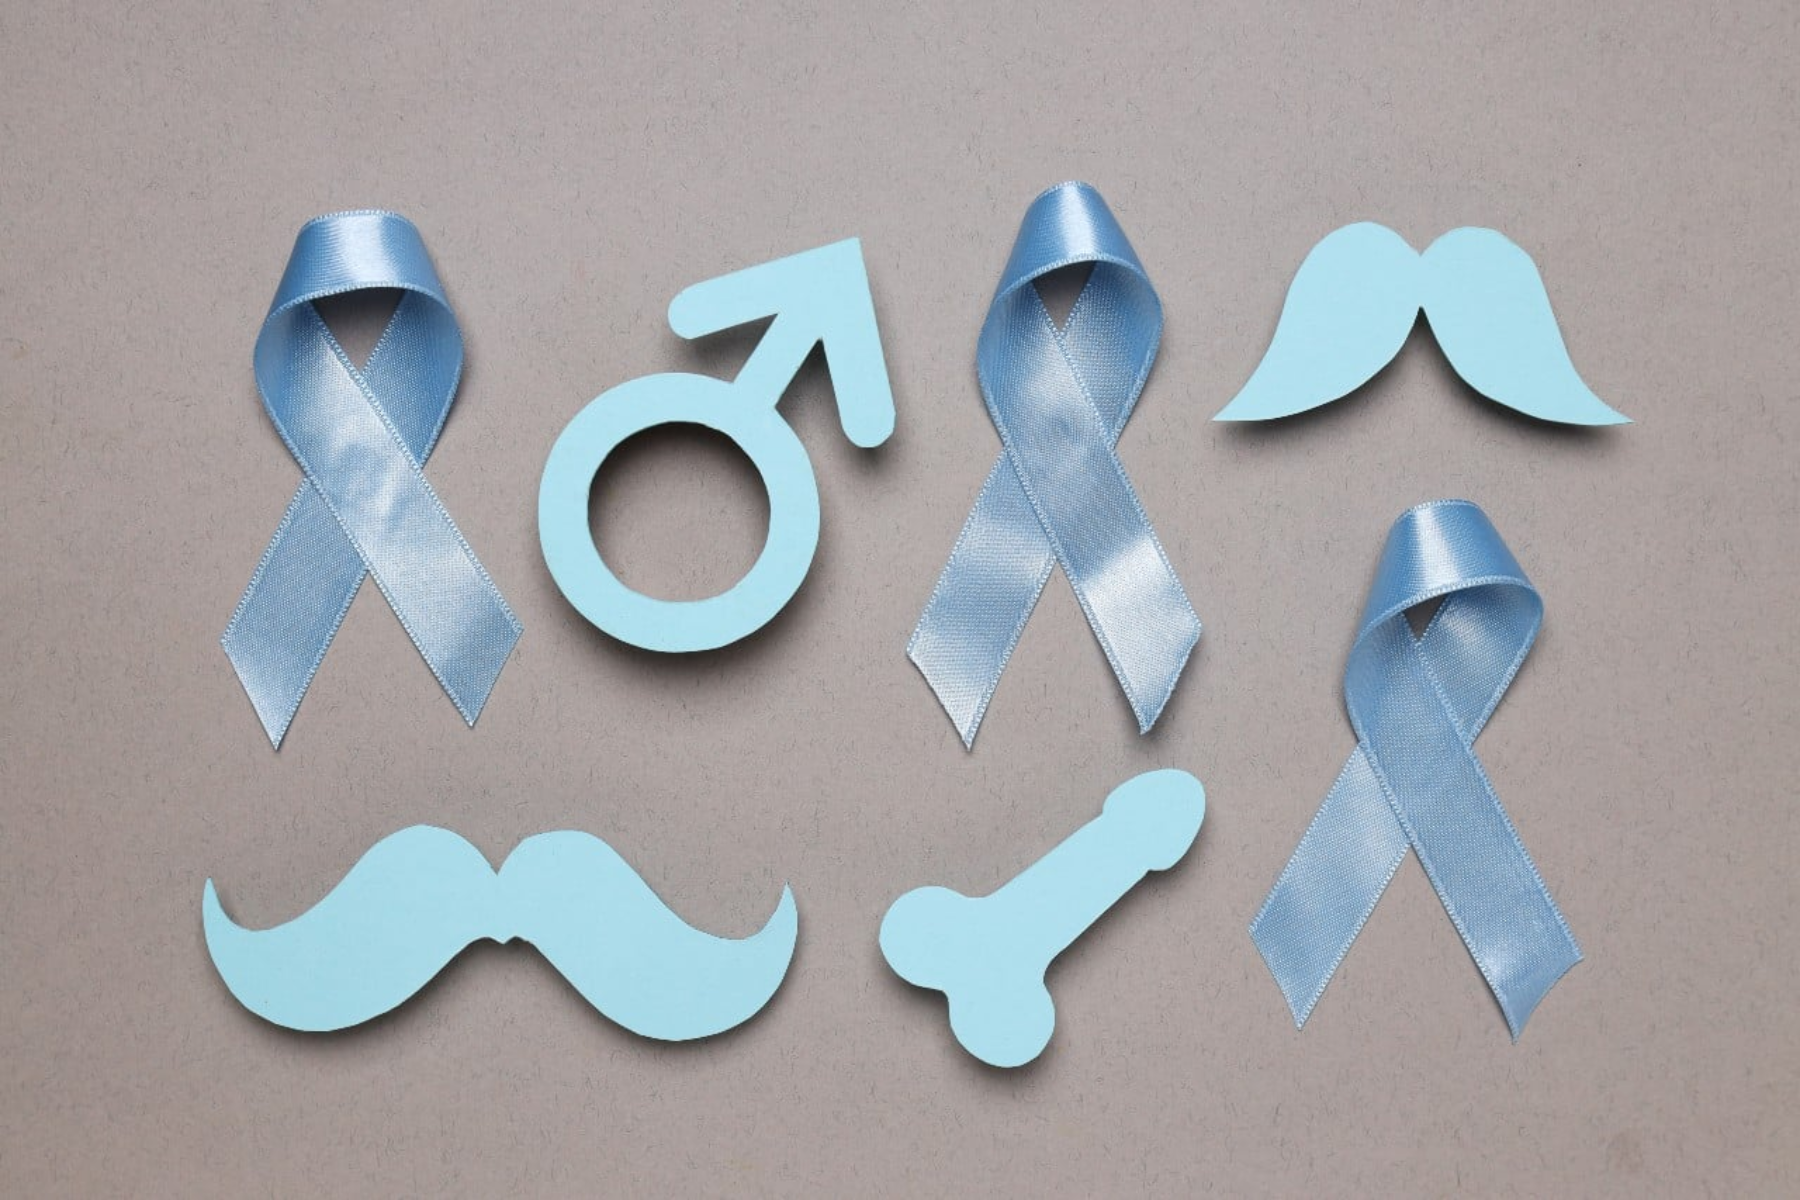 Καρκίνος προστάτης: Βασικές γνώσεις για τις οποίες πρέπει να γνωρίζει κάθε άνδρας για τον προστάτη